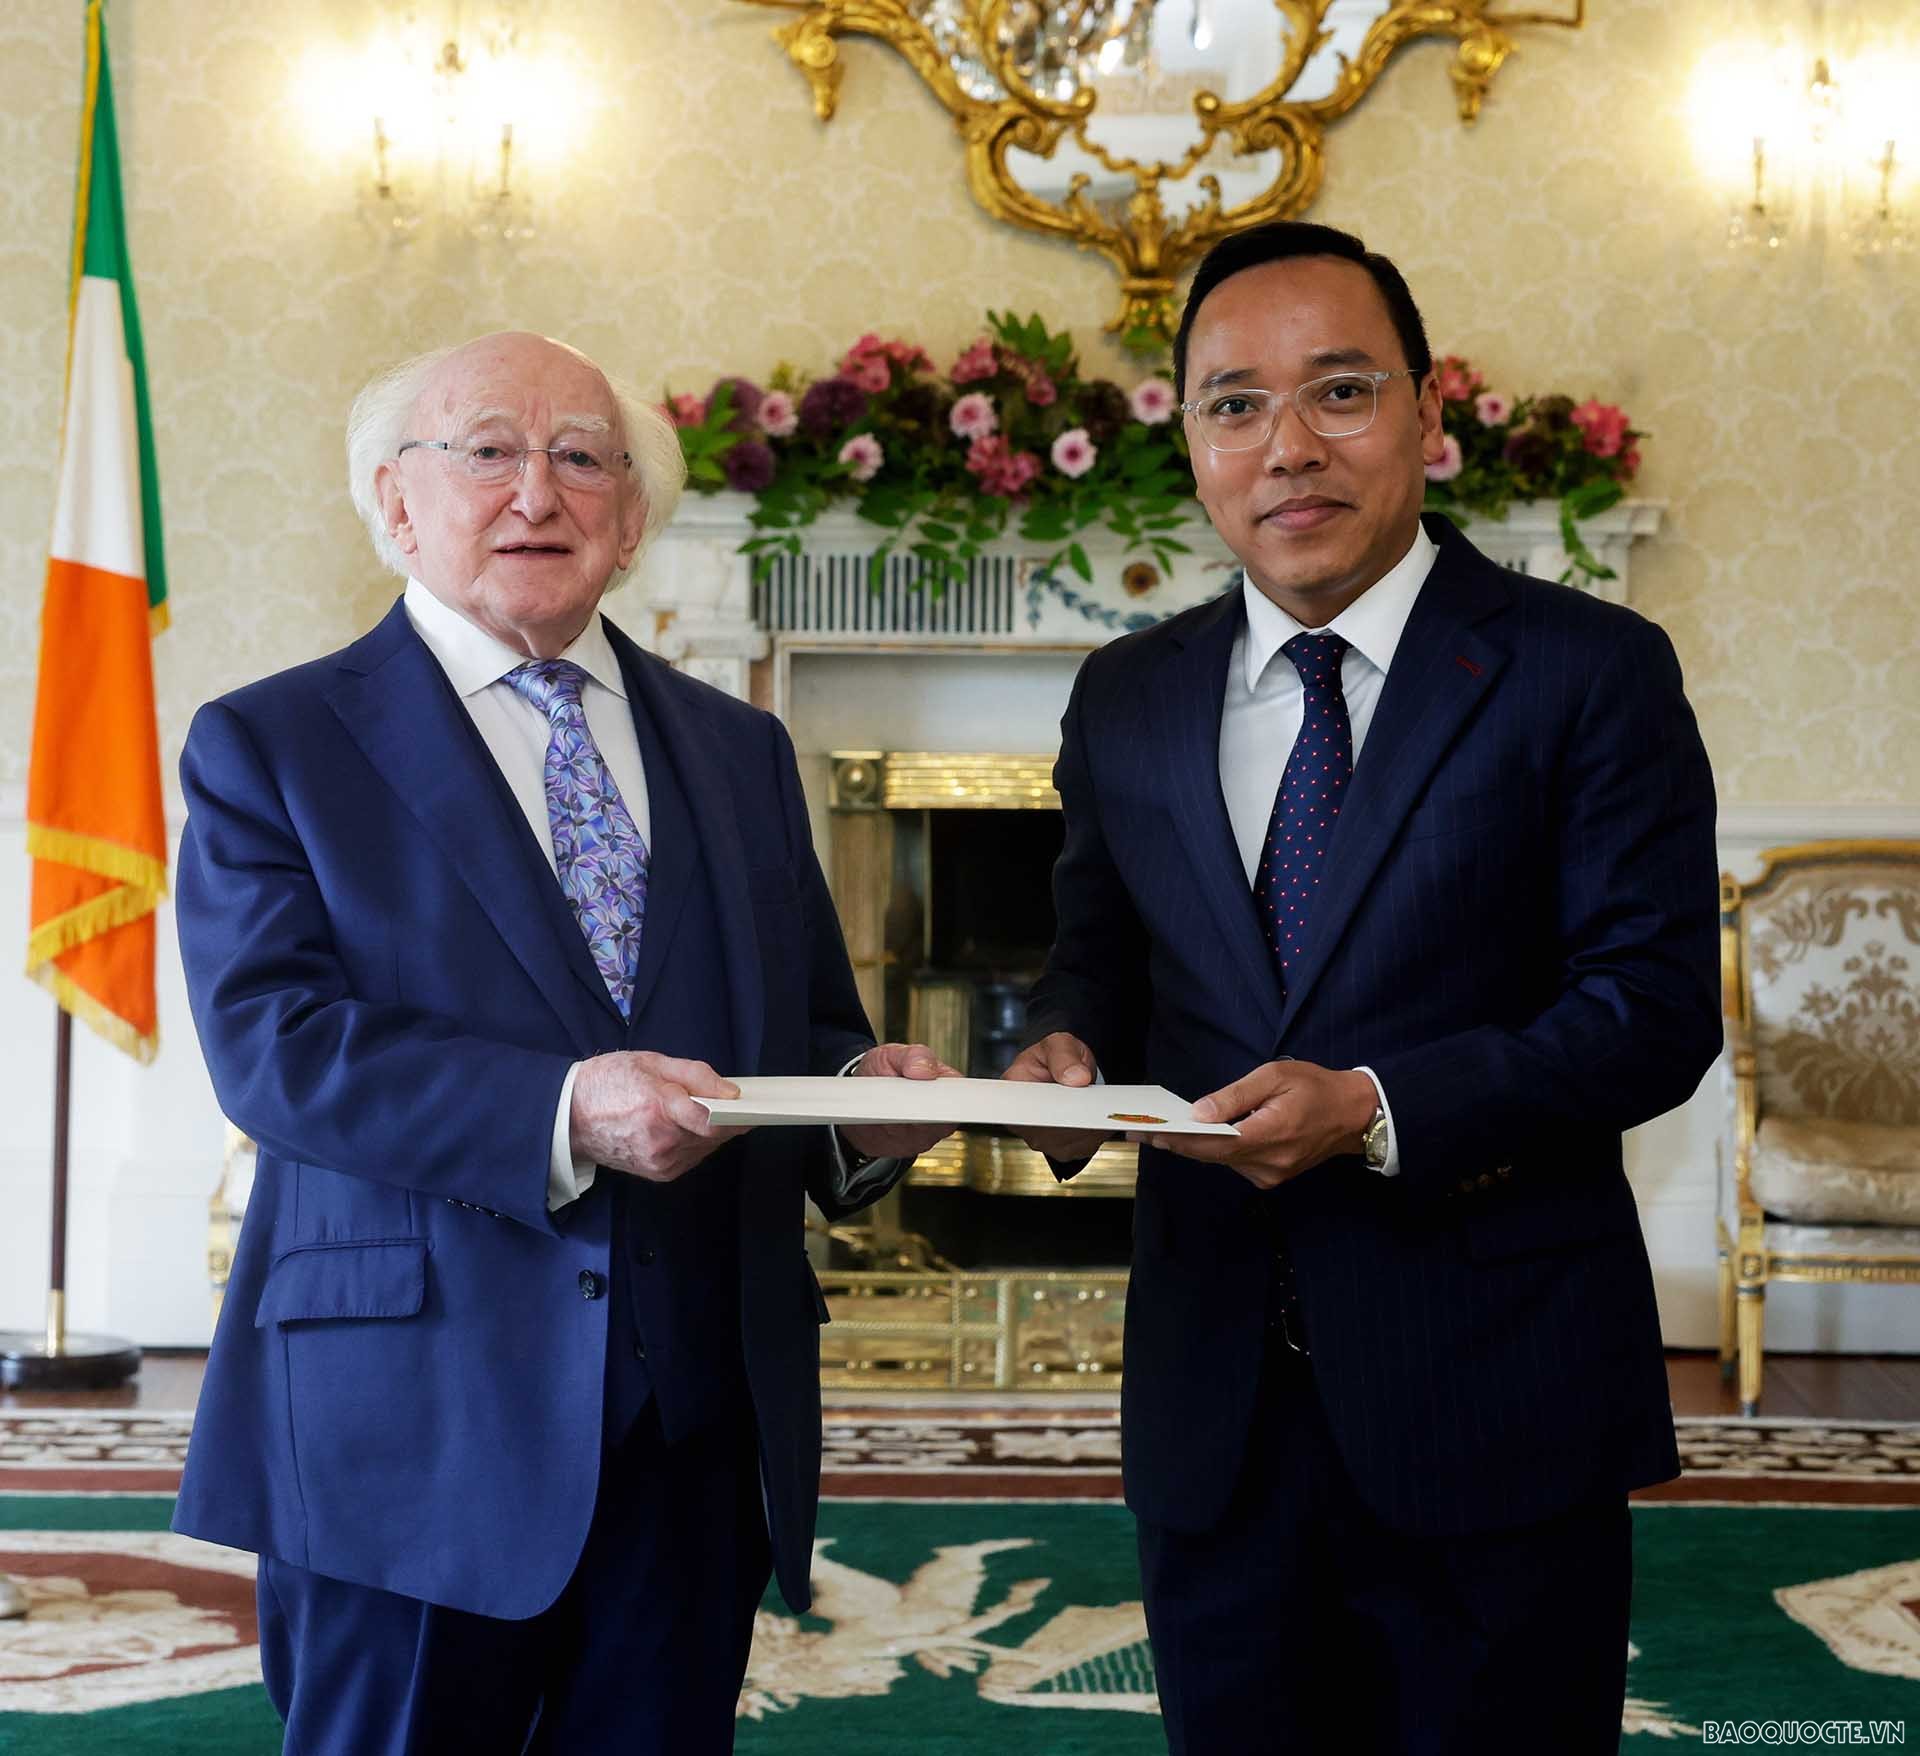 Đại sứ Nguyễn Hoàng Long trình Thư ủy nhiệm lên Tổng thống Ireland Michael D. Higgins.